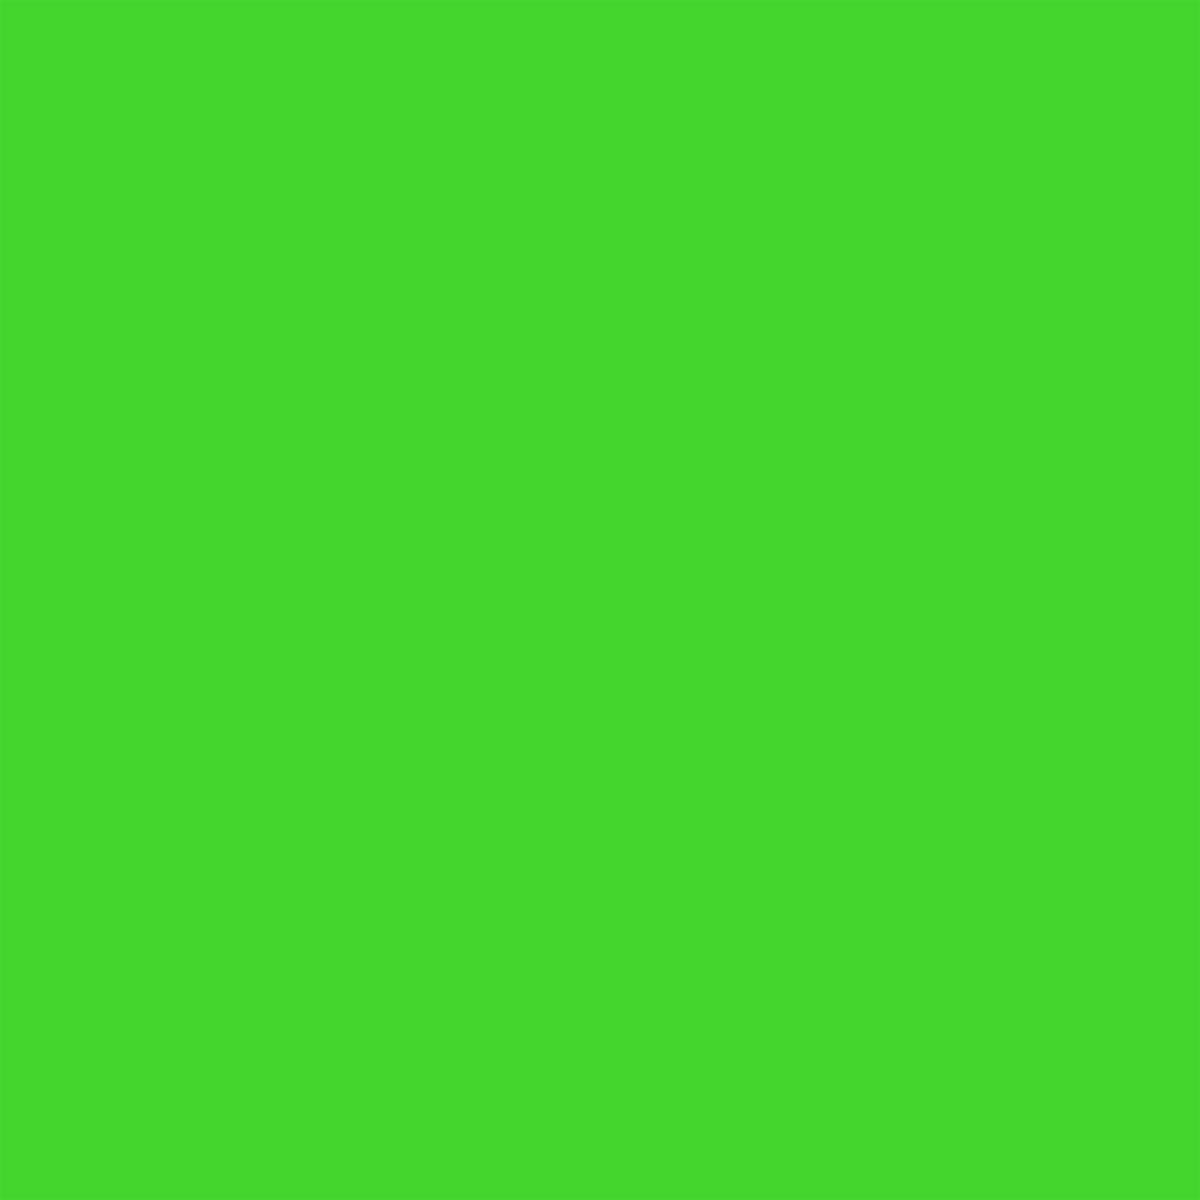 Winsor & Newton - Promarker - Neon Marker - Glowing Green